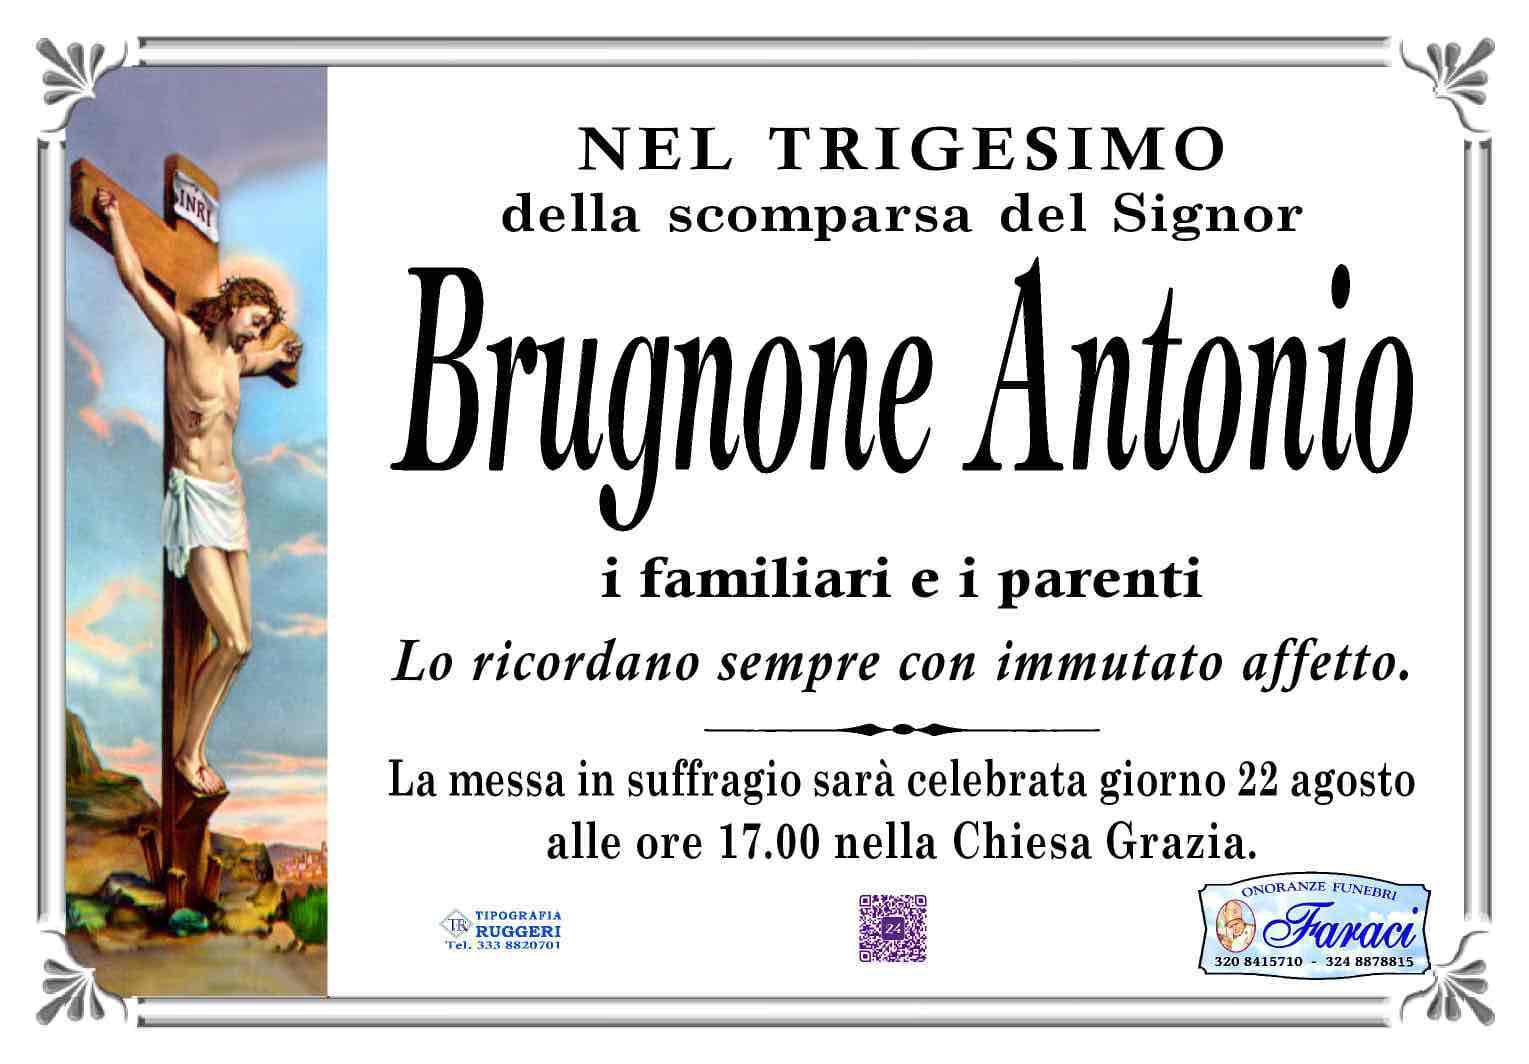 Antonio Brugnone